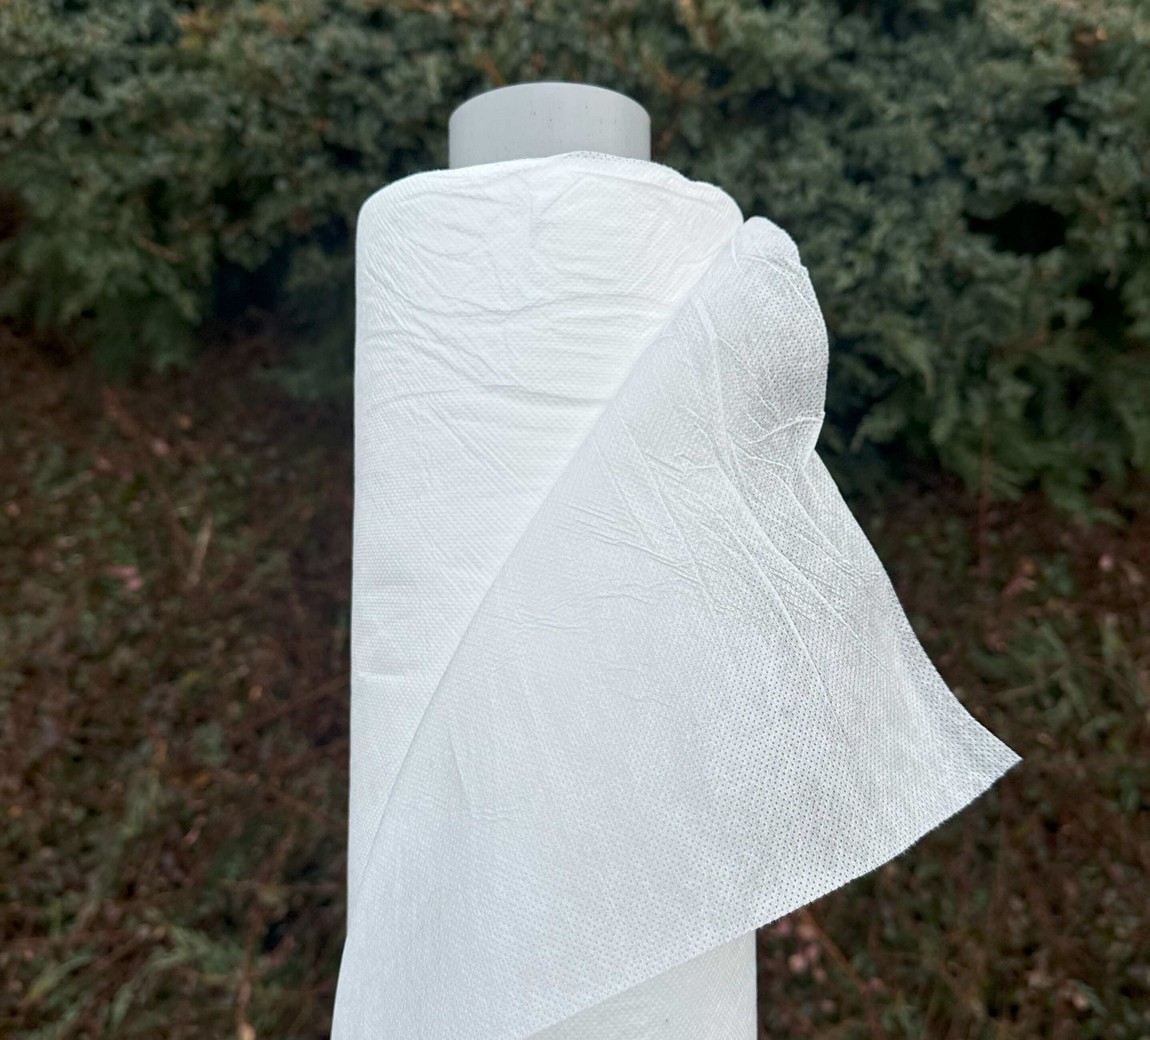 Jutabond Netkaná textílie proti mrazu, 50g/m2, 100m x 3,2m - bílá EXTRA SILNÁ ZAHRADA Sklad6 0378 100